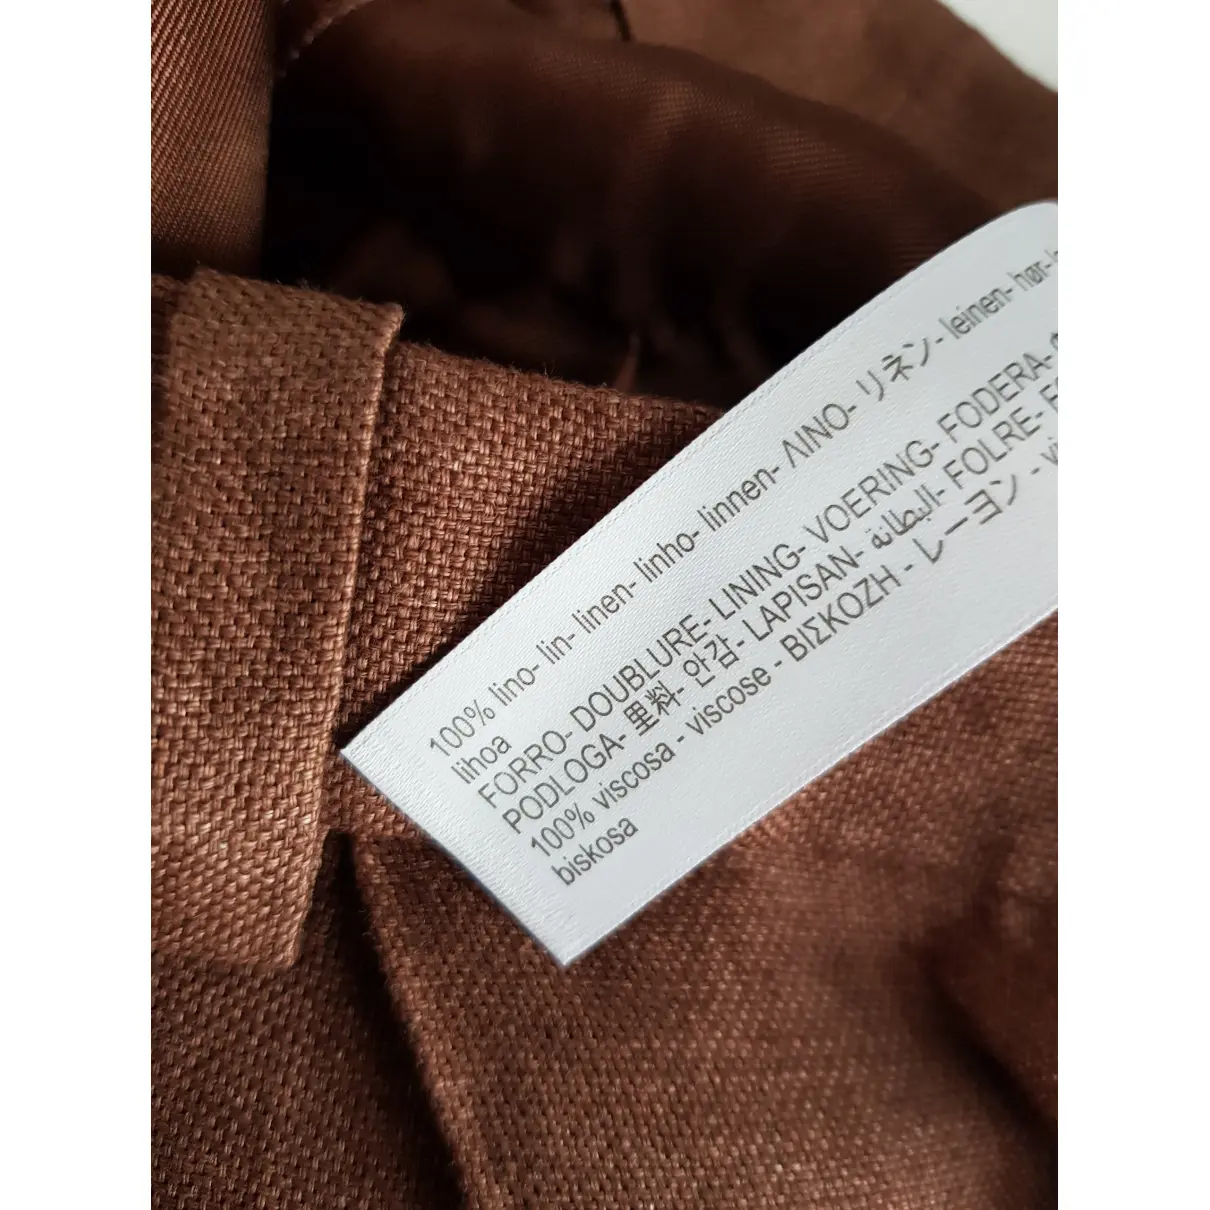 Buy Massimo Dutti Linen suit jacket online